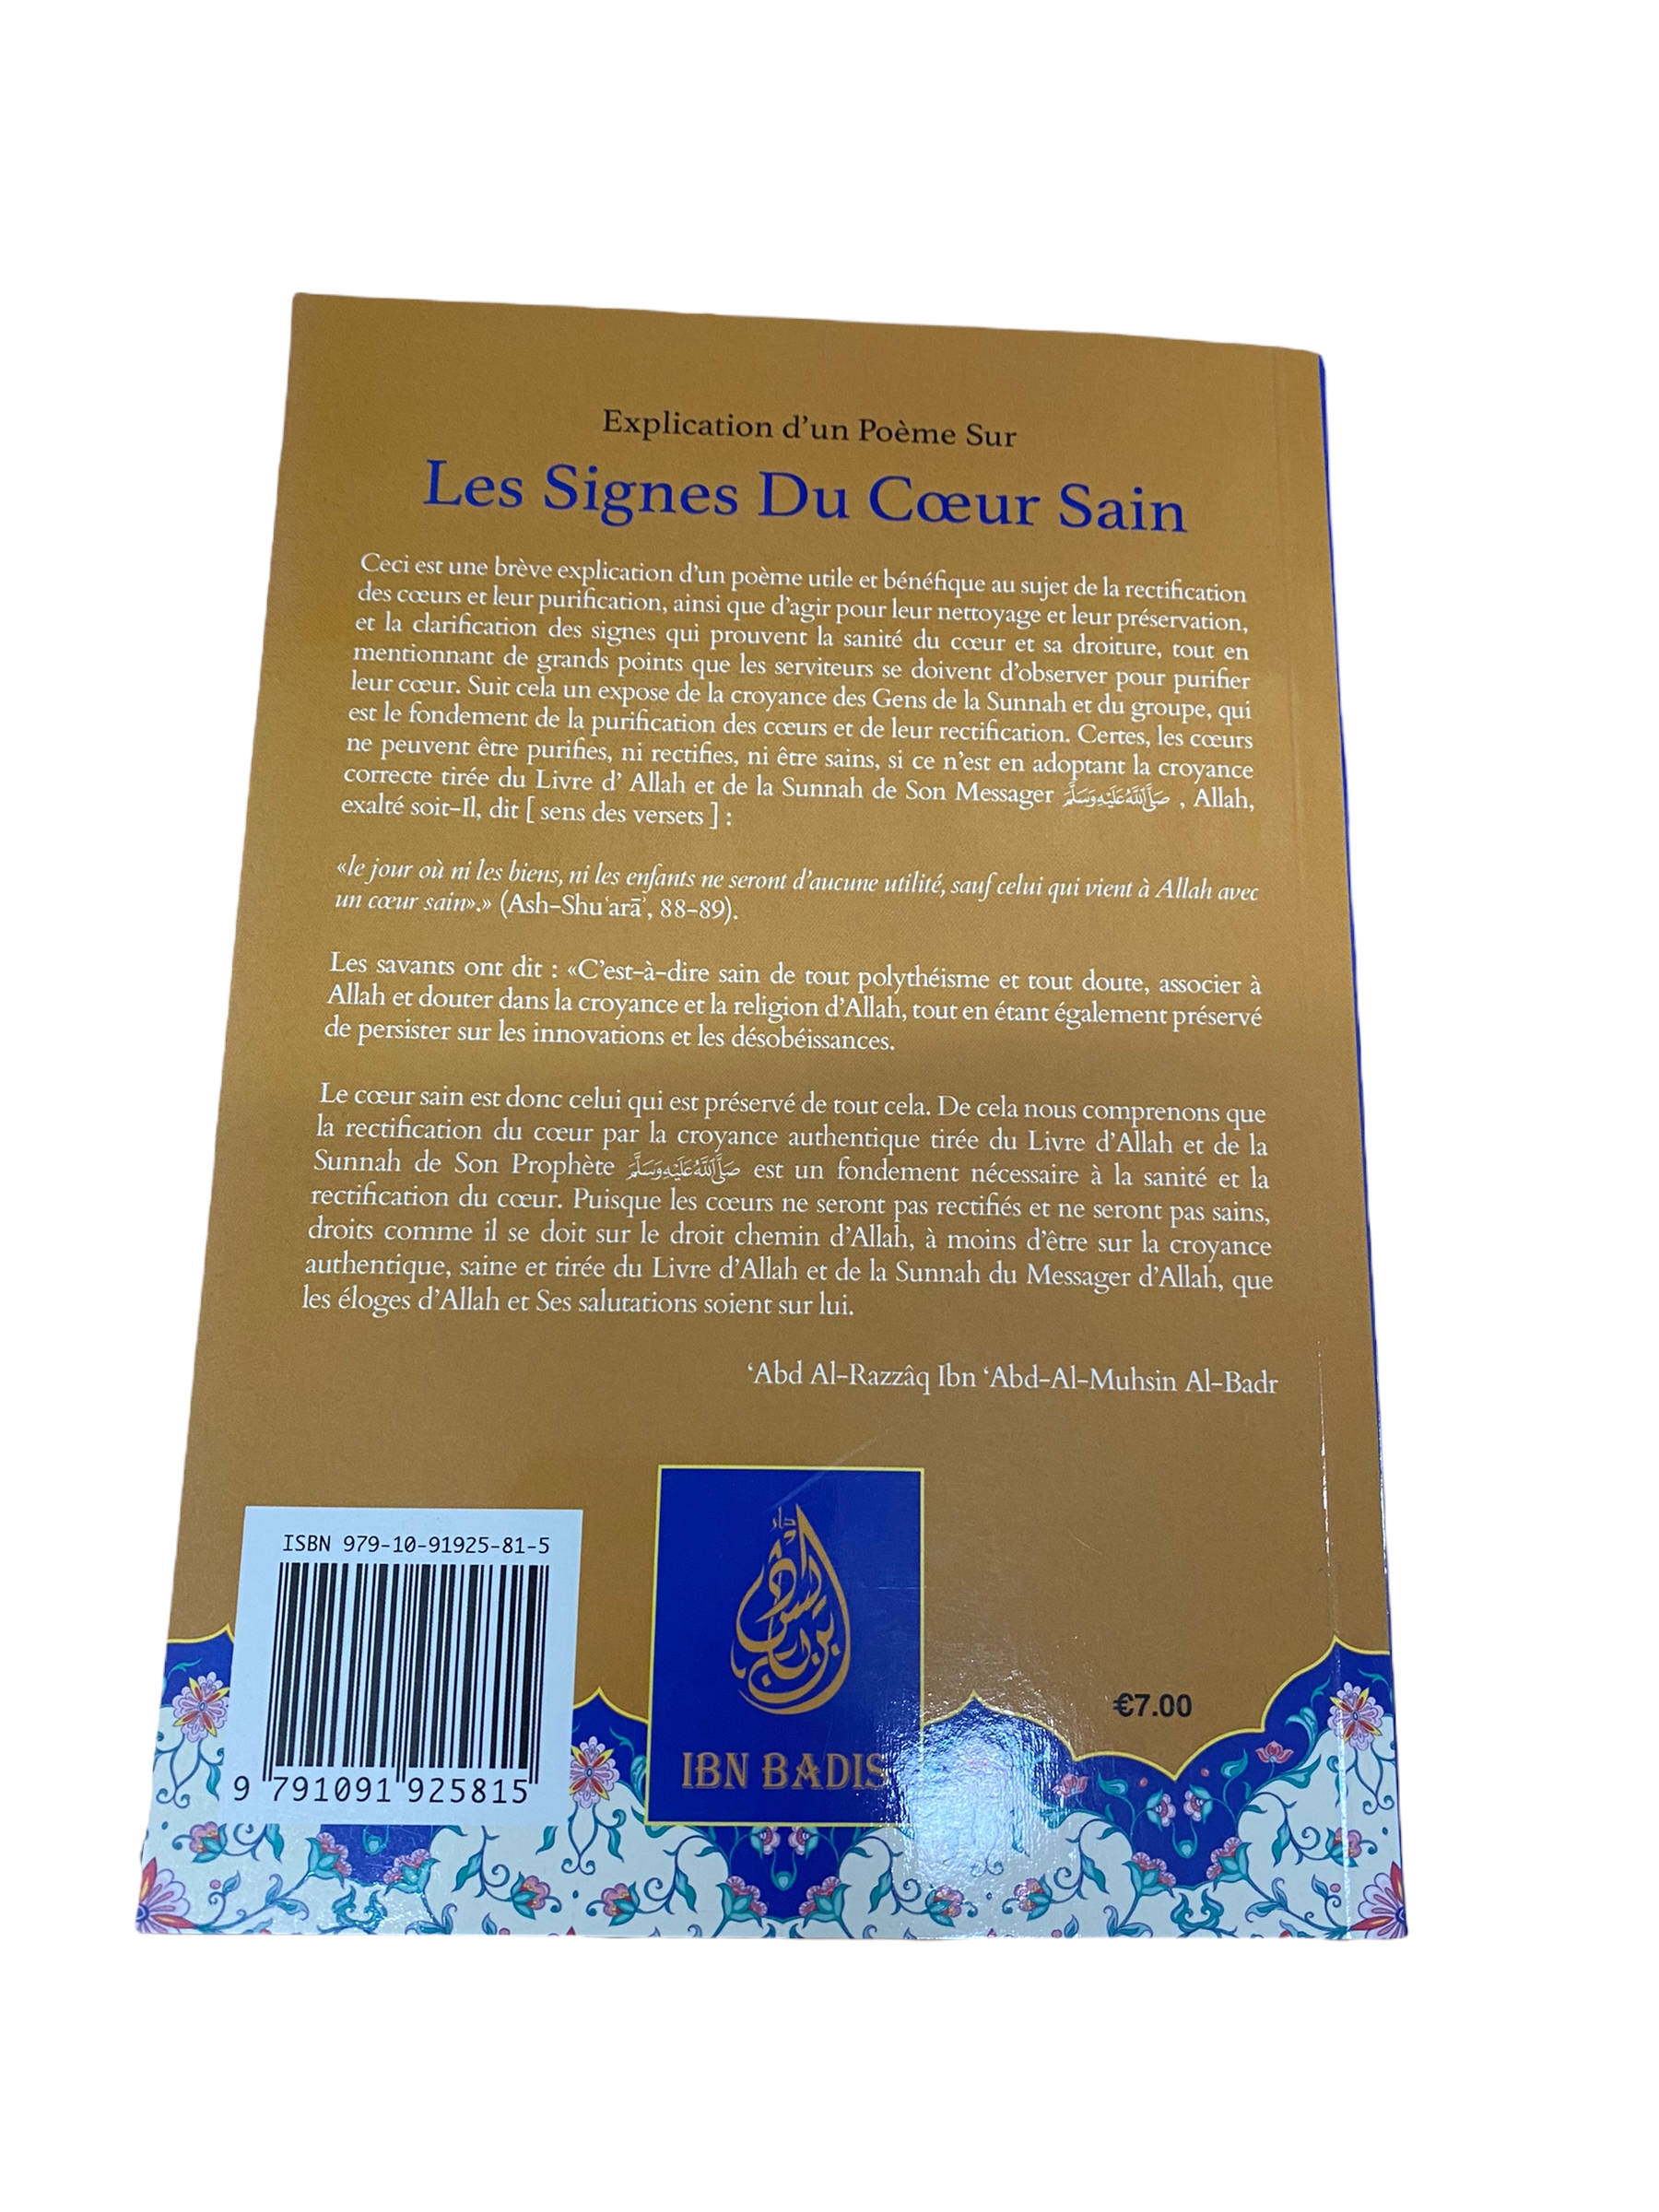 Explication d'un poème sur les signes du cœur sain De Sulaymân Samhân par le grand shaykh Abd Ar-Razzâq Abd Al-Muhsin Al-Badr